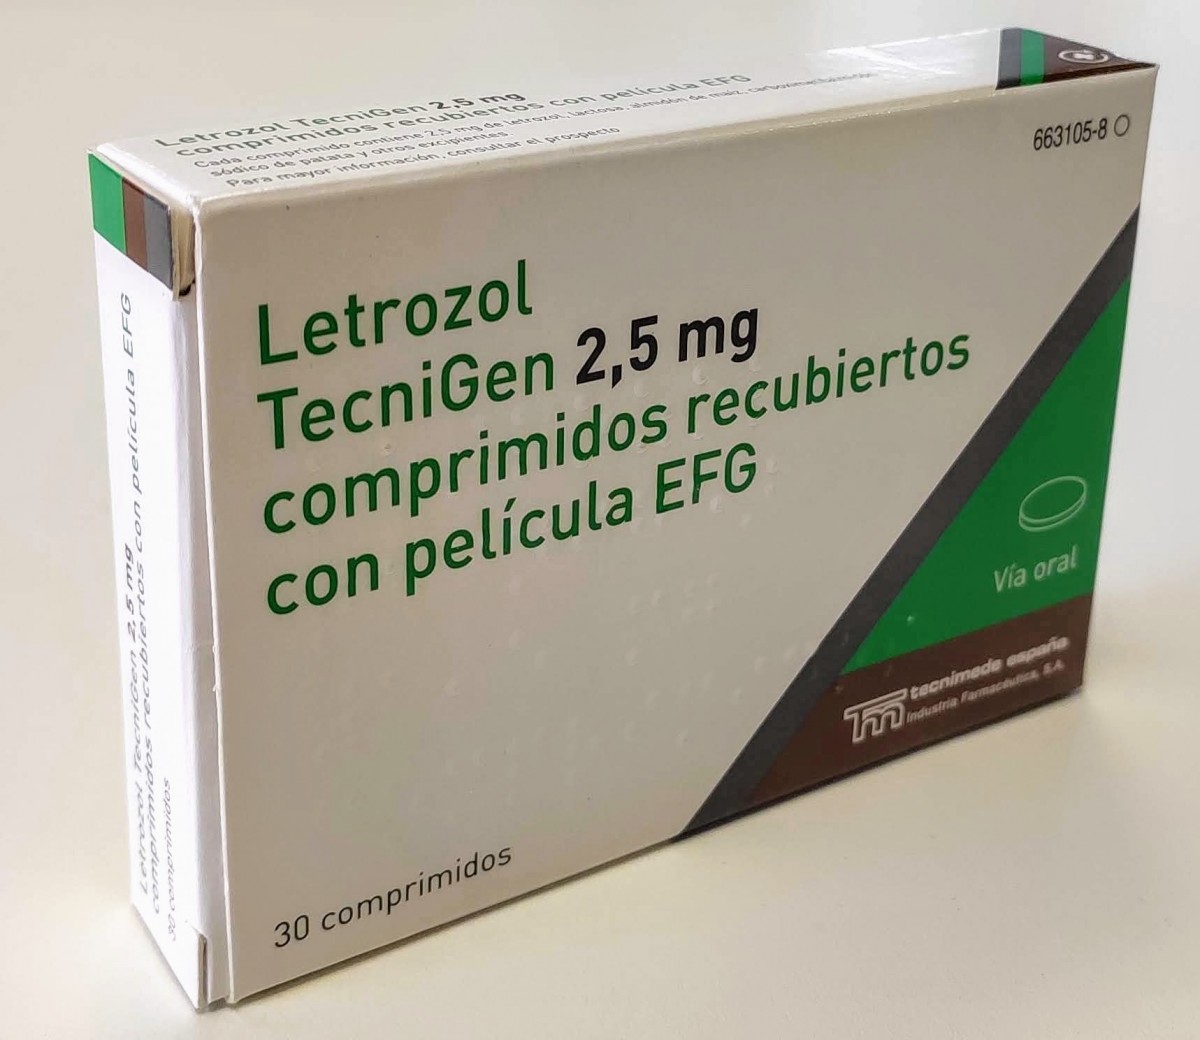 LETROZOL TECNIGEN 2,5 mg COMPRIMIDOS RECUBIERTOS CON PELICULA EFG , 30 comprimidos fotografía del envase.